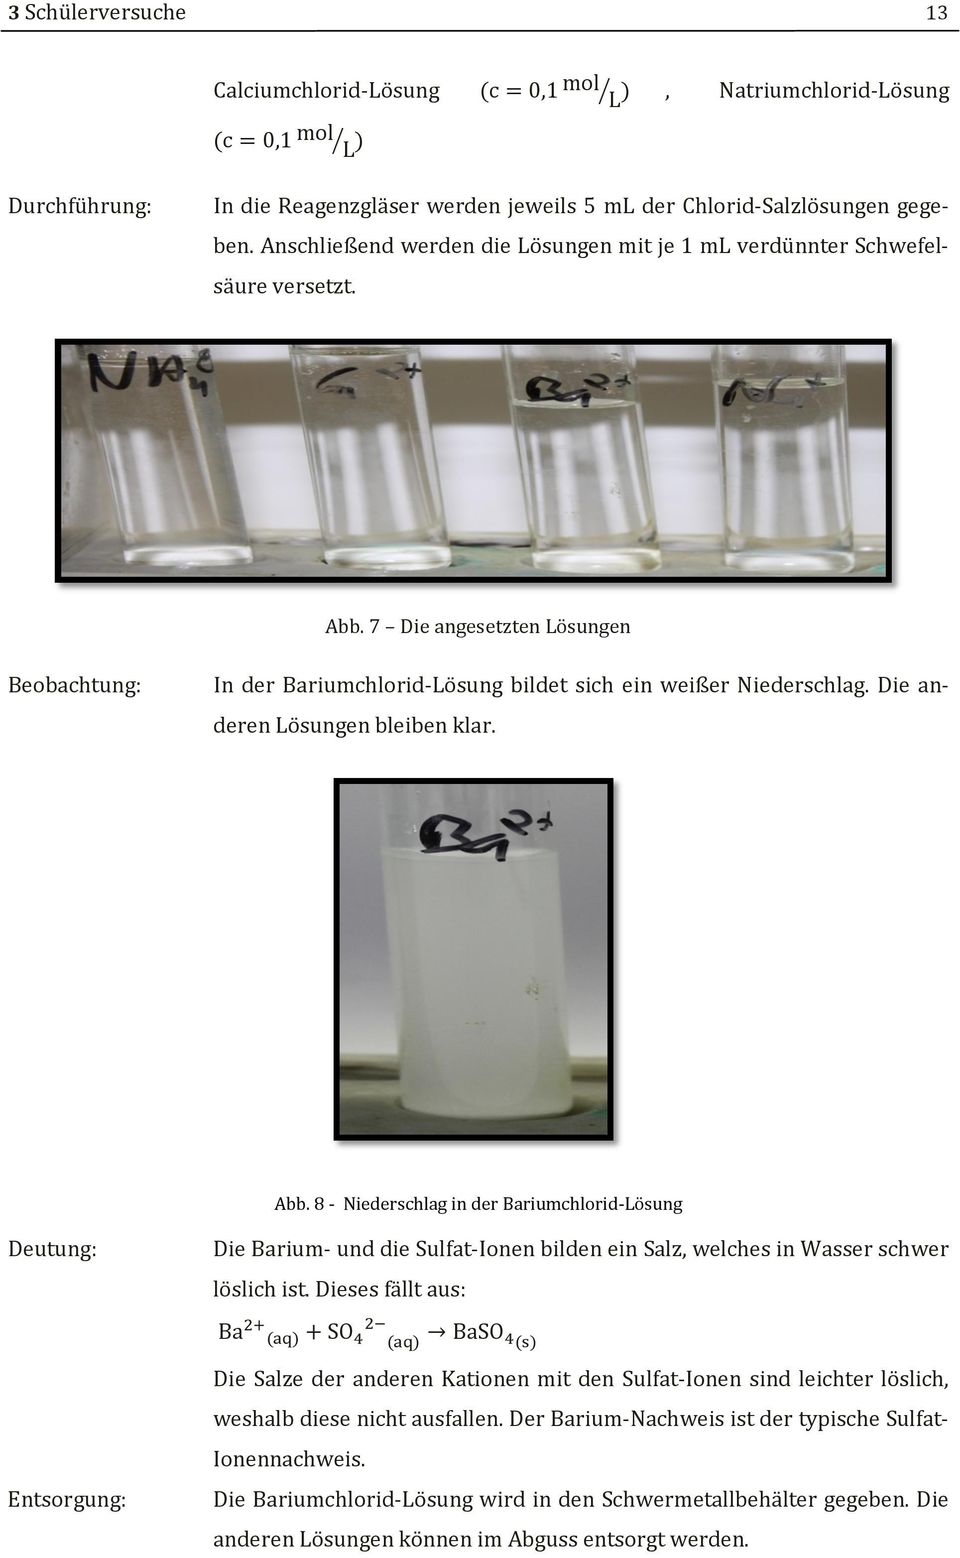 Die anderen Lösungen bleiben klar. Abb. 8 - Niederschlag in der Bariumchlorid-Lösung Deutung: Die Barium- und die Sulfat-Ionen bilden ein Salz, welches in Wasser schwer löslich ist.